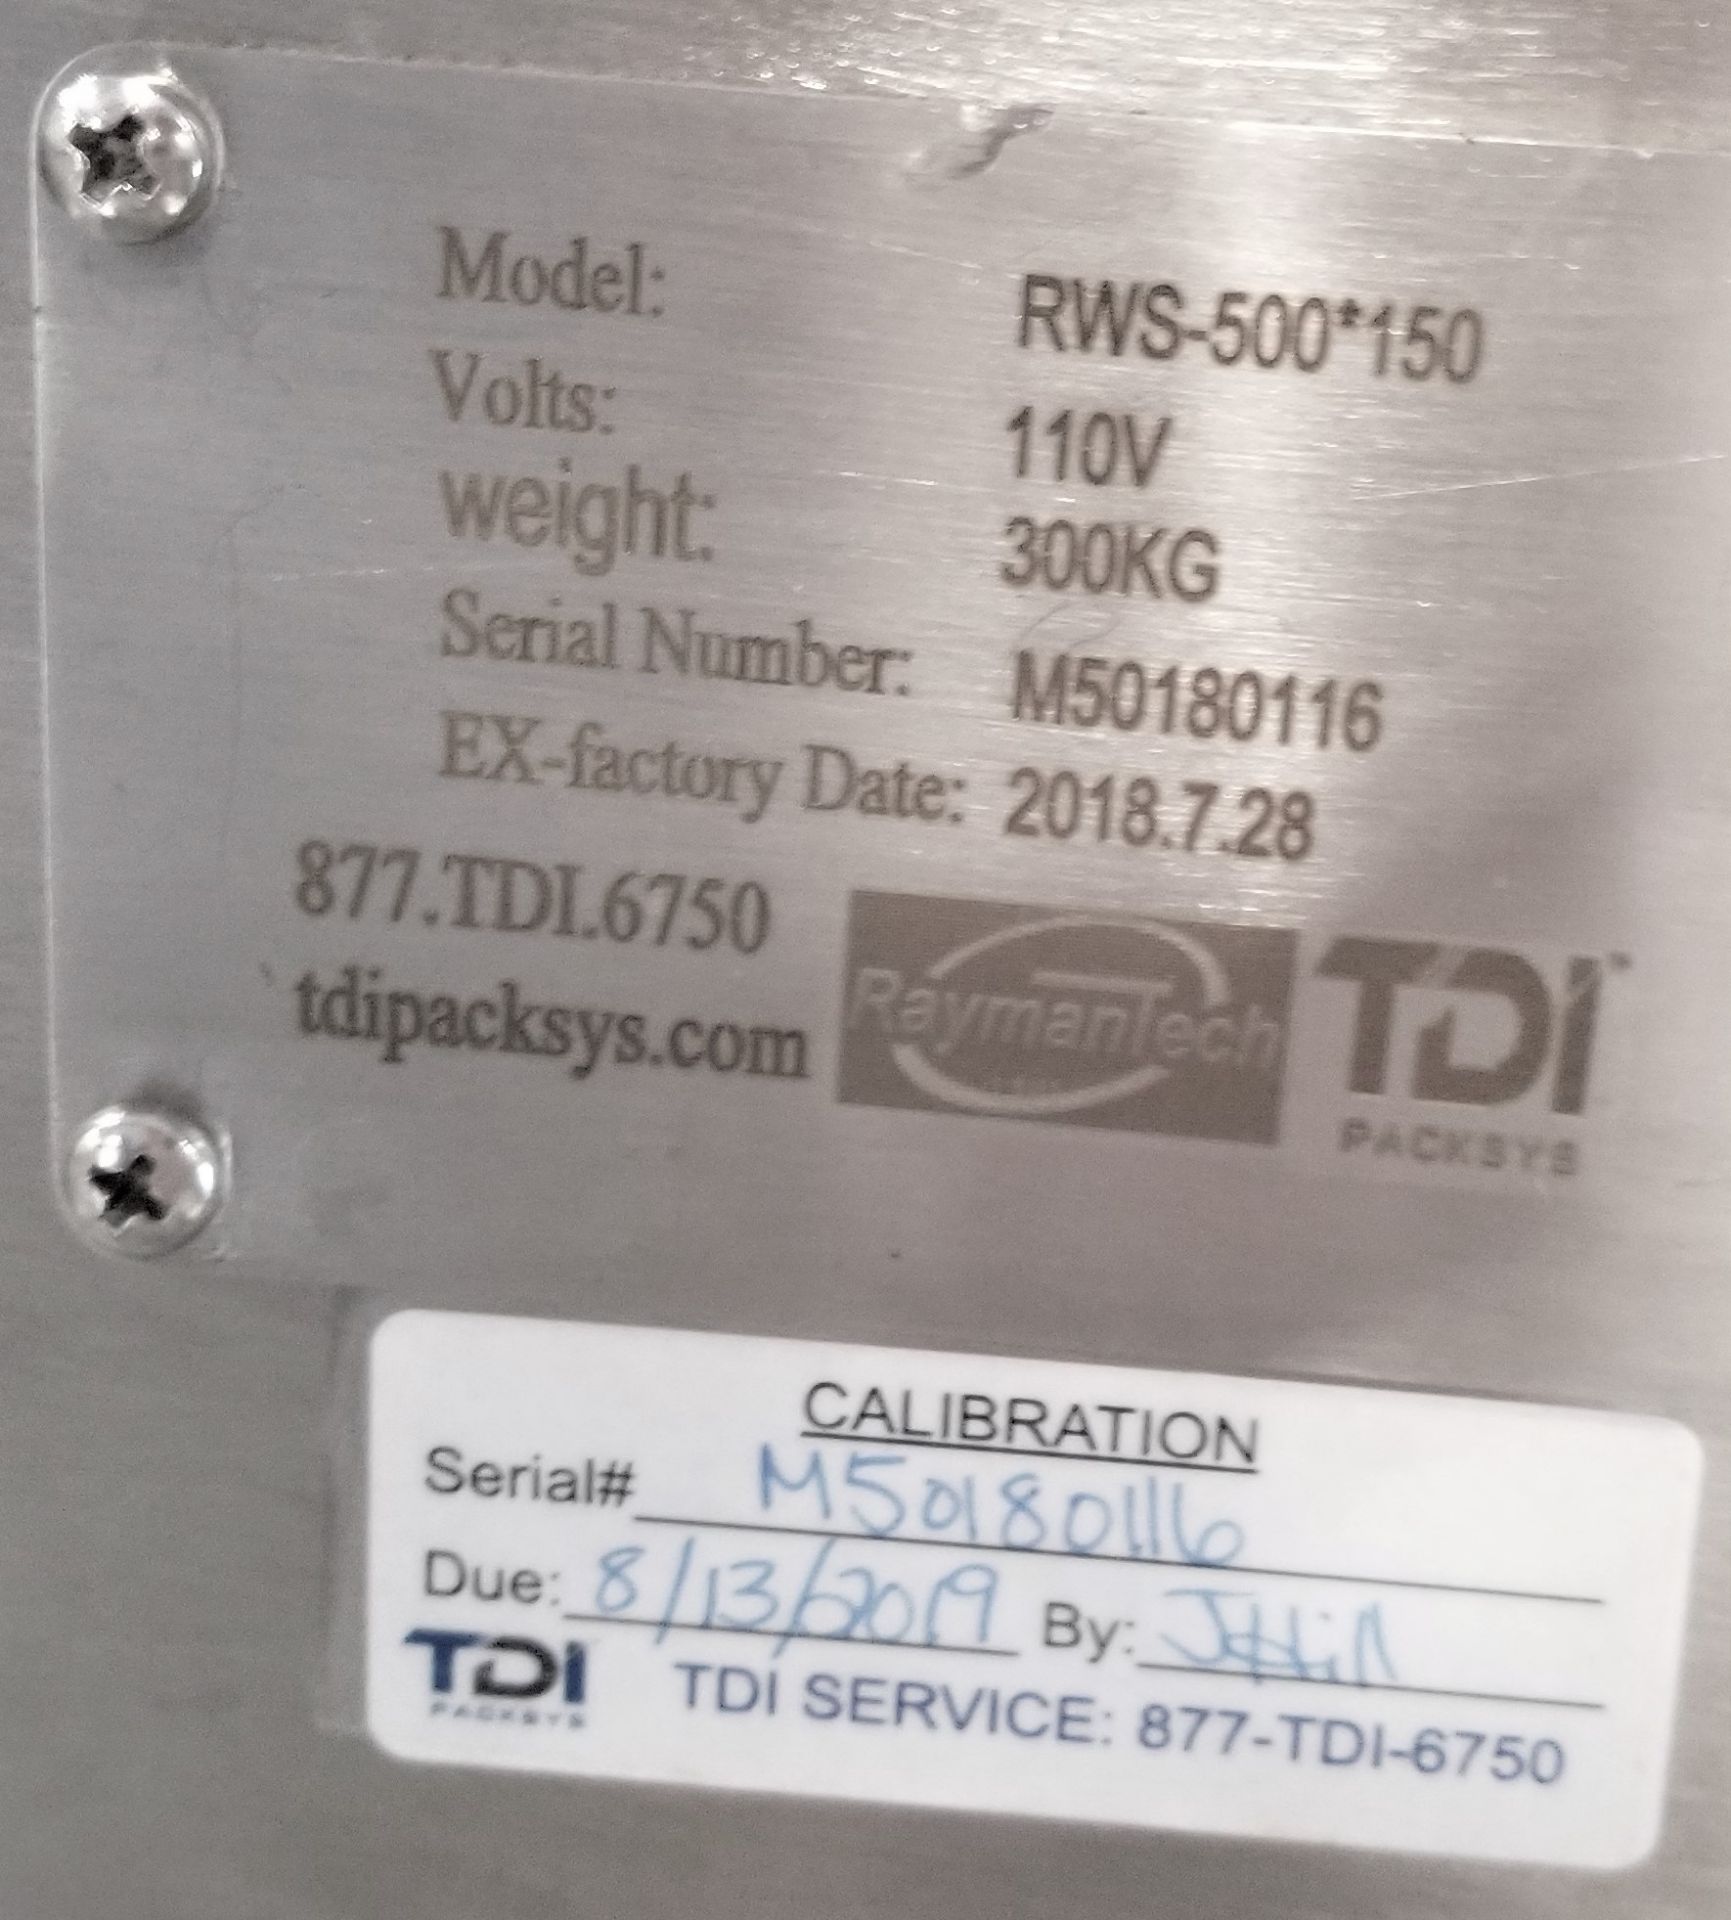 2018 Model Metal Detector. TDI Metal Detector, new in 2018. 110V. Mdl: RSW-500*150. S/N M501 - Image 6 of 6